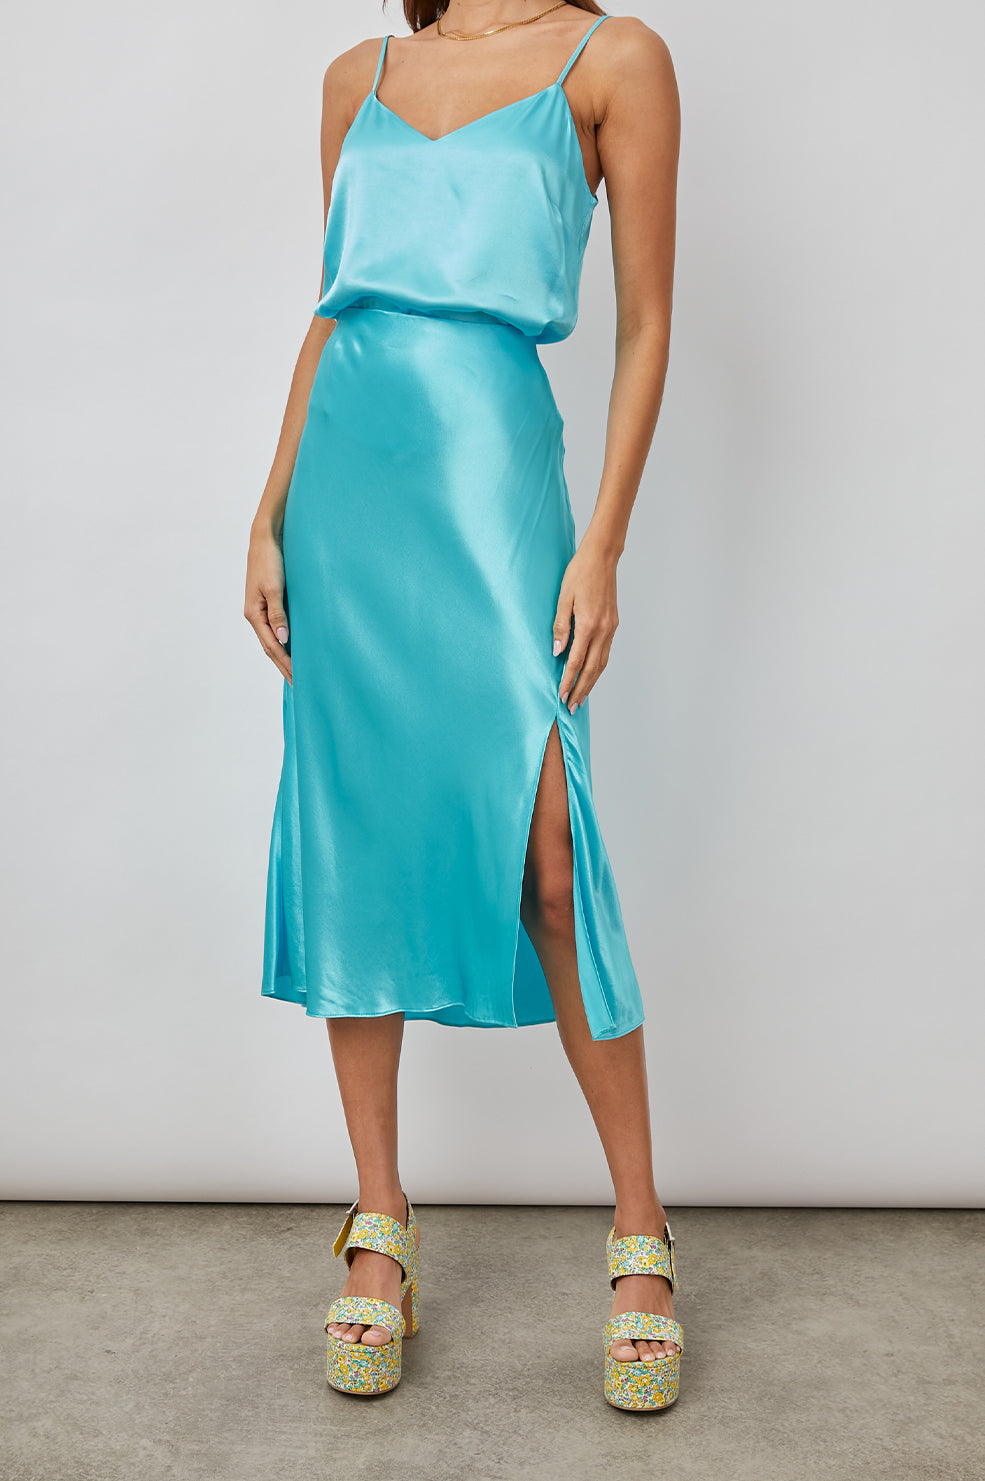 Satin slip skirt with side split in azure blue